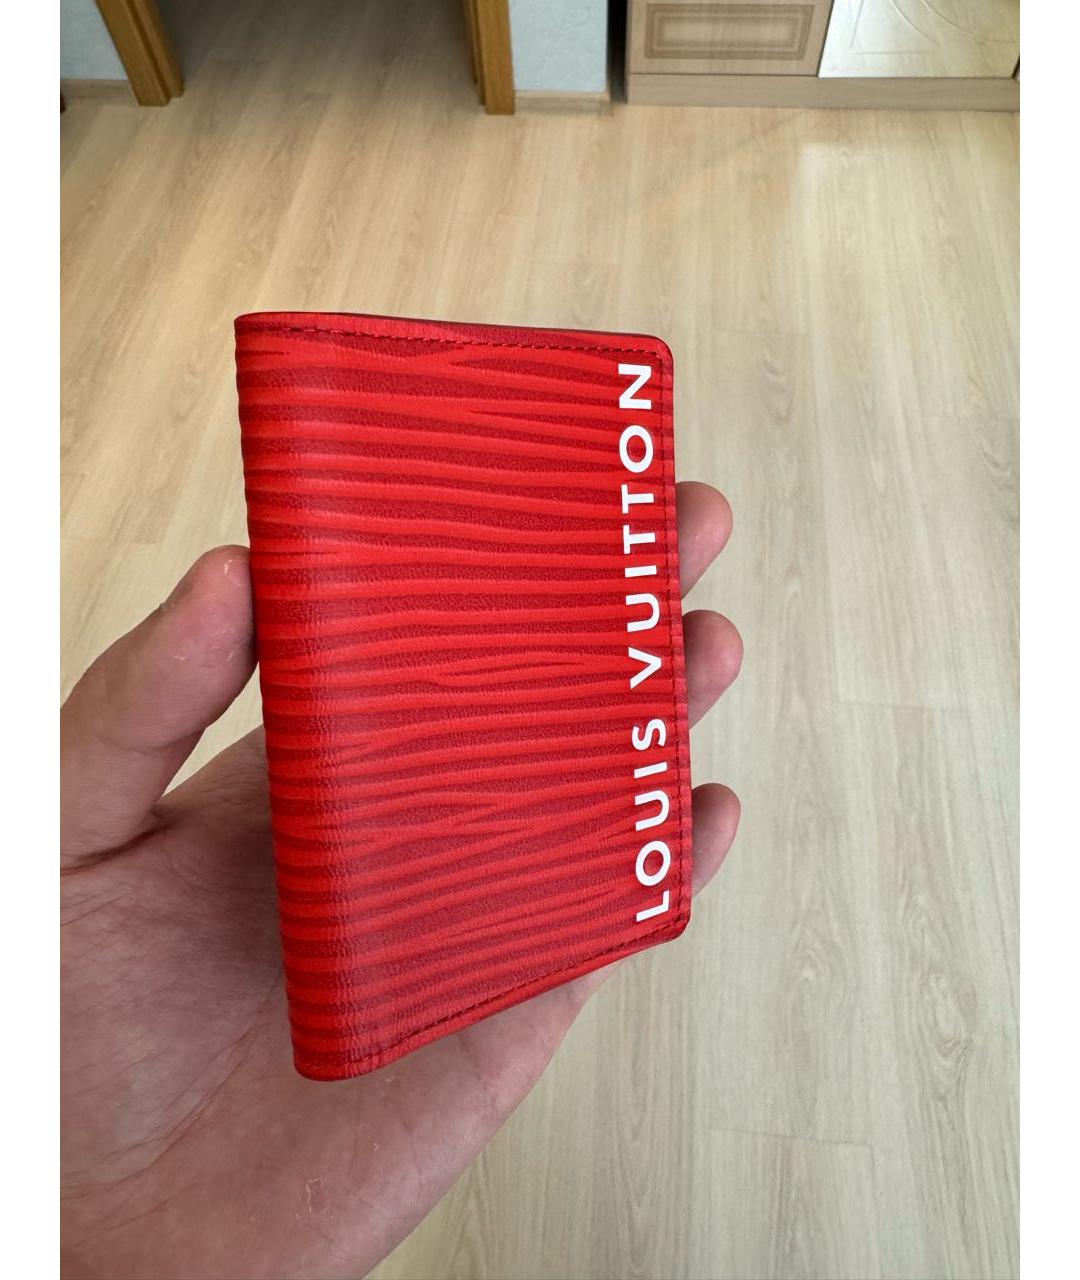 LOUIS VUITTON PRE-OWNED Красный кожаный кошелек, фото 6